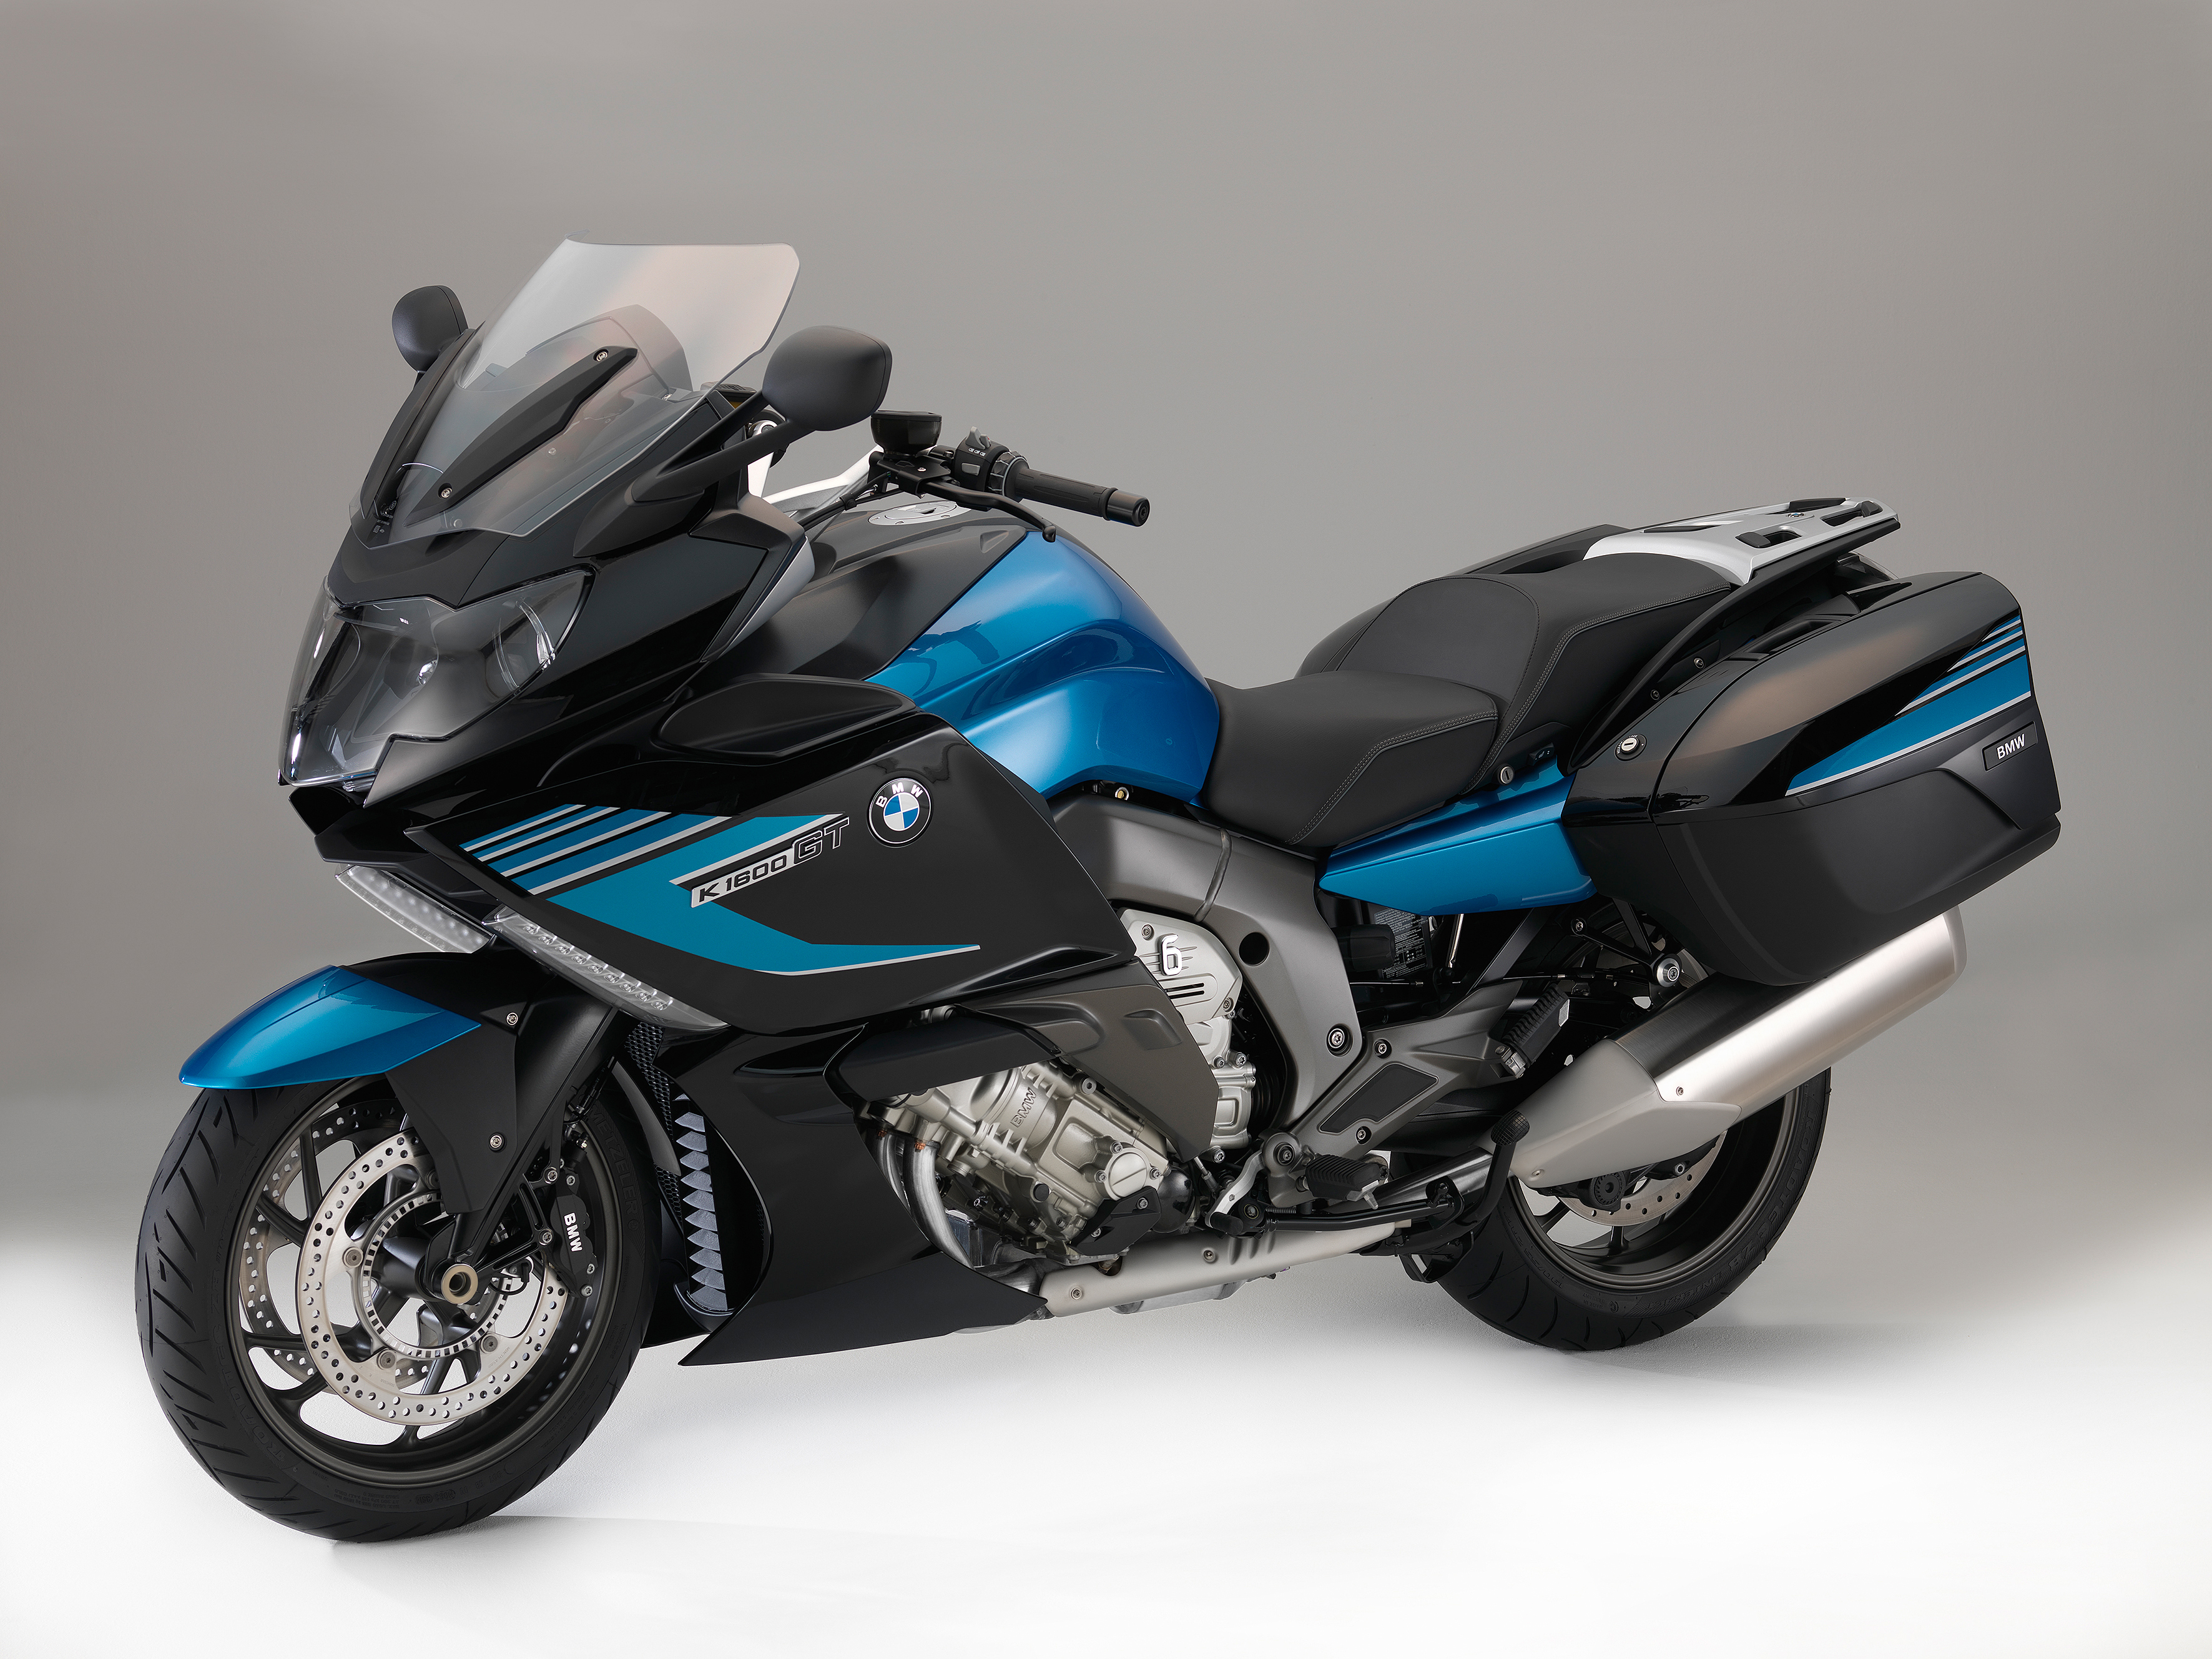 BMW Motorrad Modellpflegemaßnahmen für das Modelljahr 2015